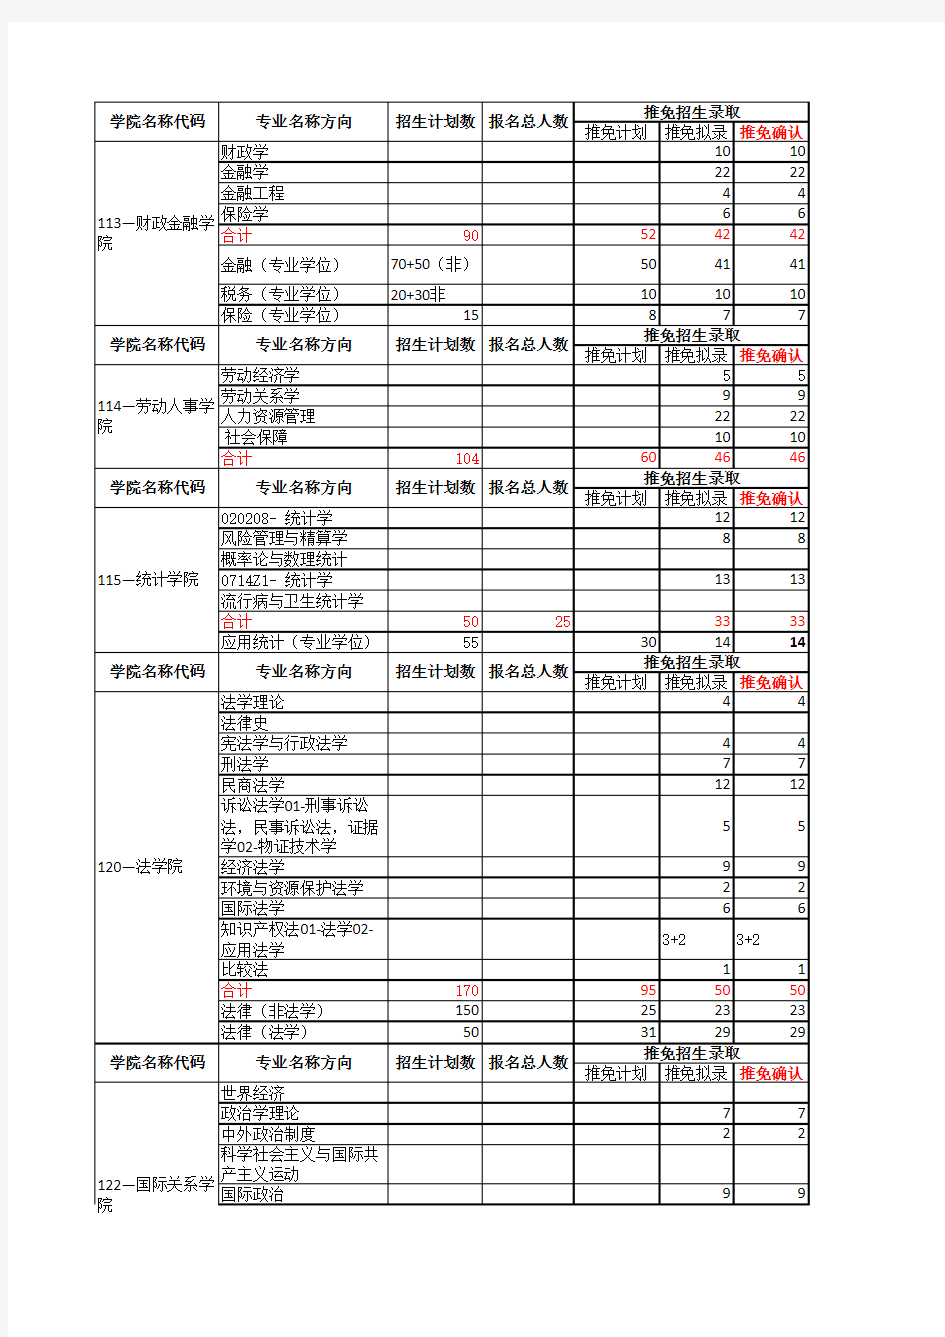 中国人民大学2015年度硕士研究生招生录取情况表